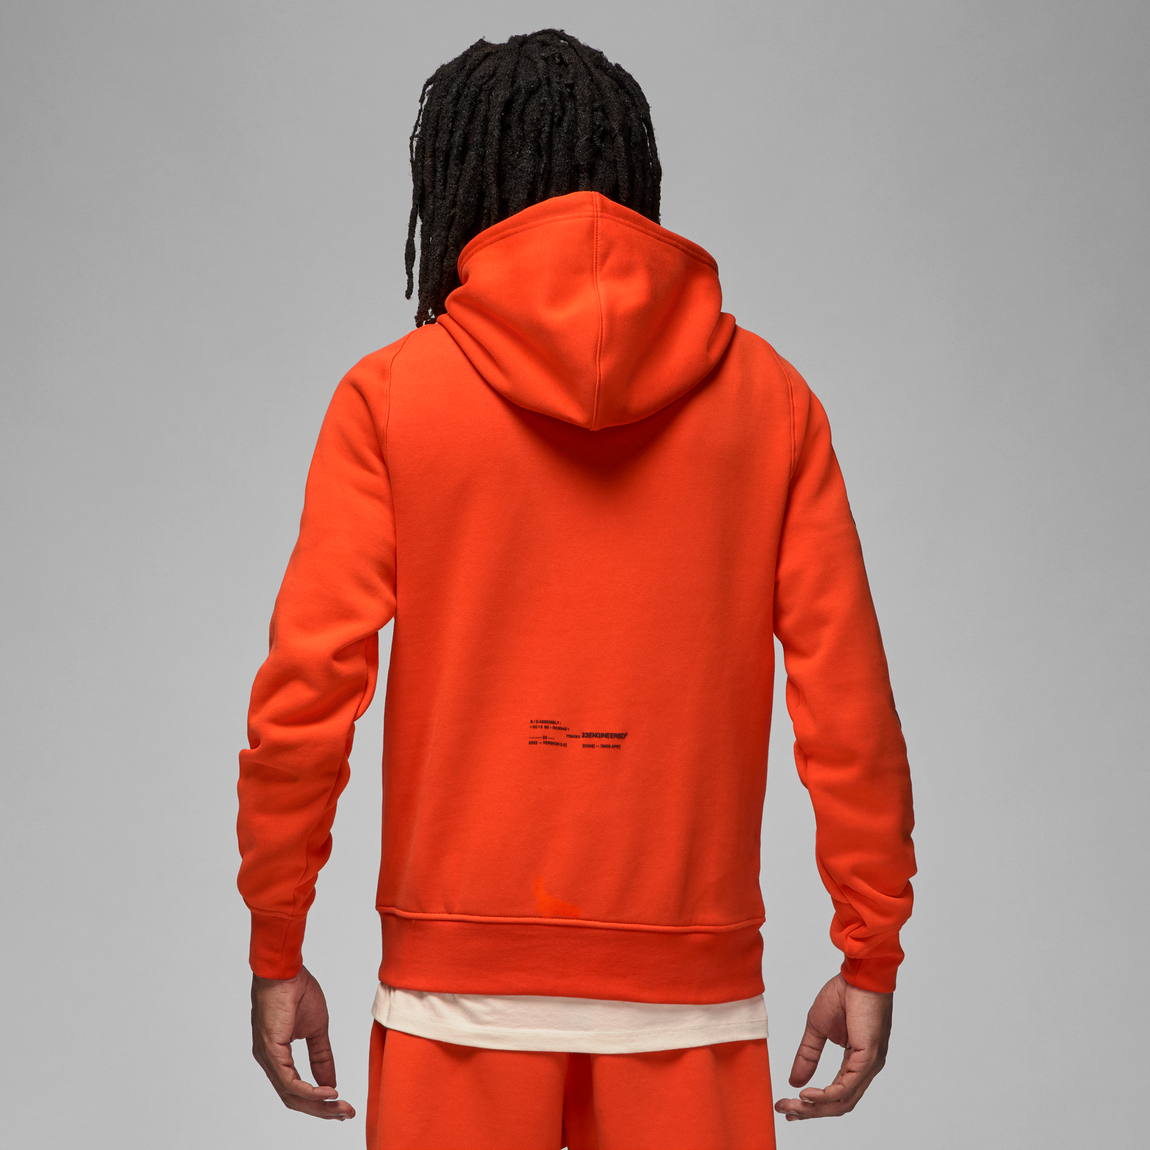 Jordan 23 Engineered Fleece Pullover Hoodie (Team Orange/Habanero Red-Black) - Jordan 23 Engineered Fleece Pullover Hoodie (Team Orange/Habanero Red-Black) - 